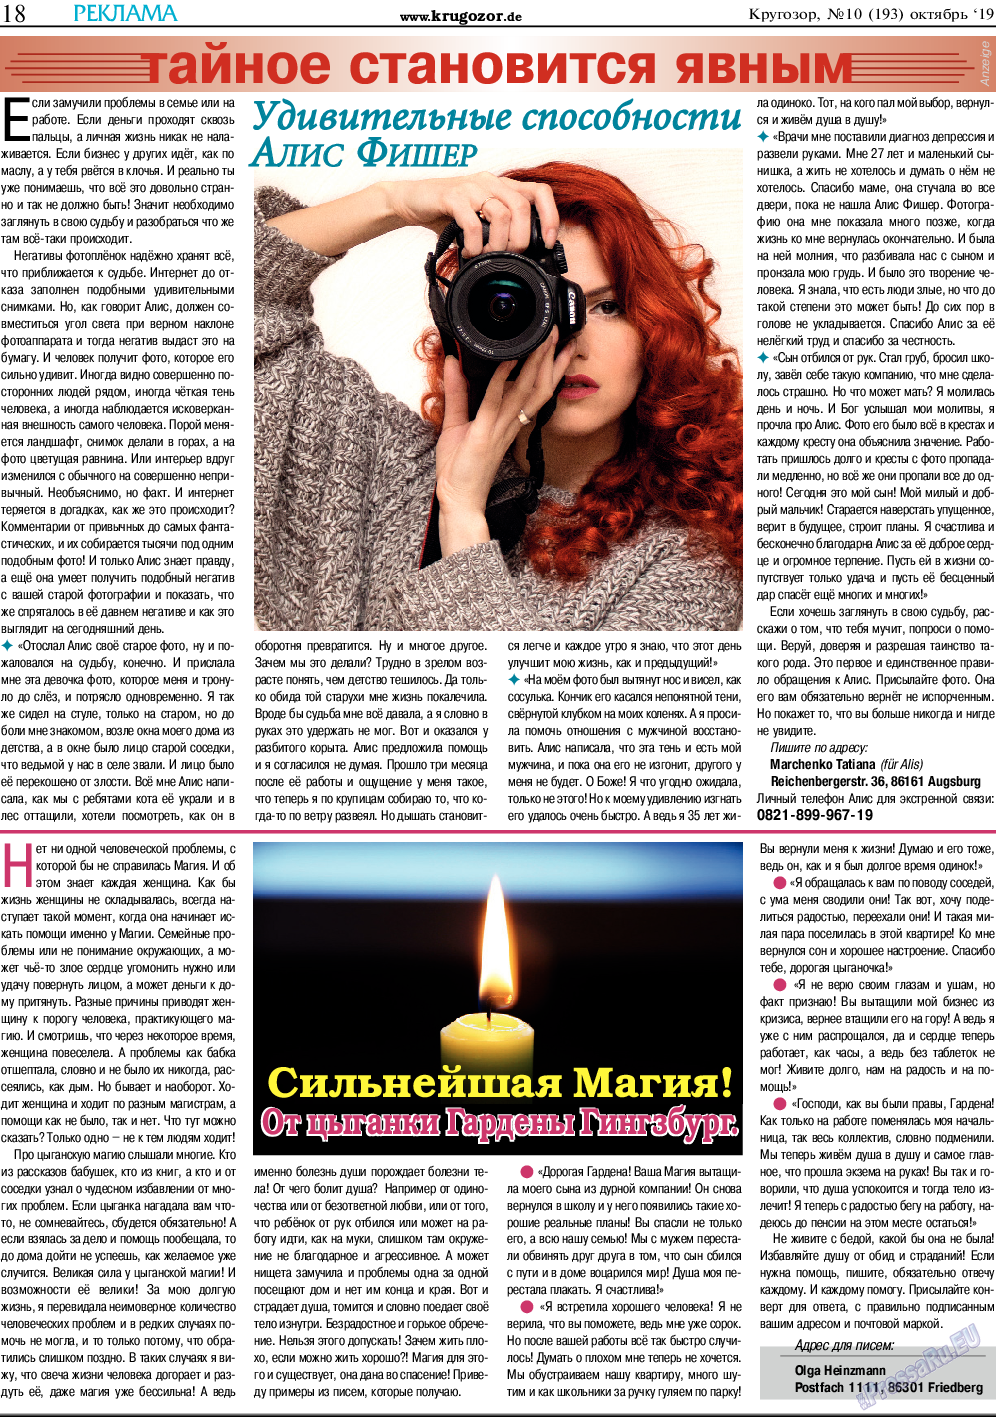 Кругозор, газета. 2019 №10 стр.18